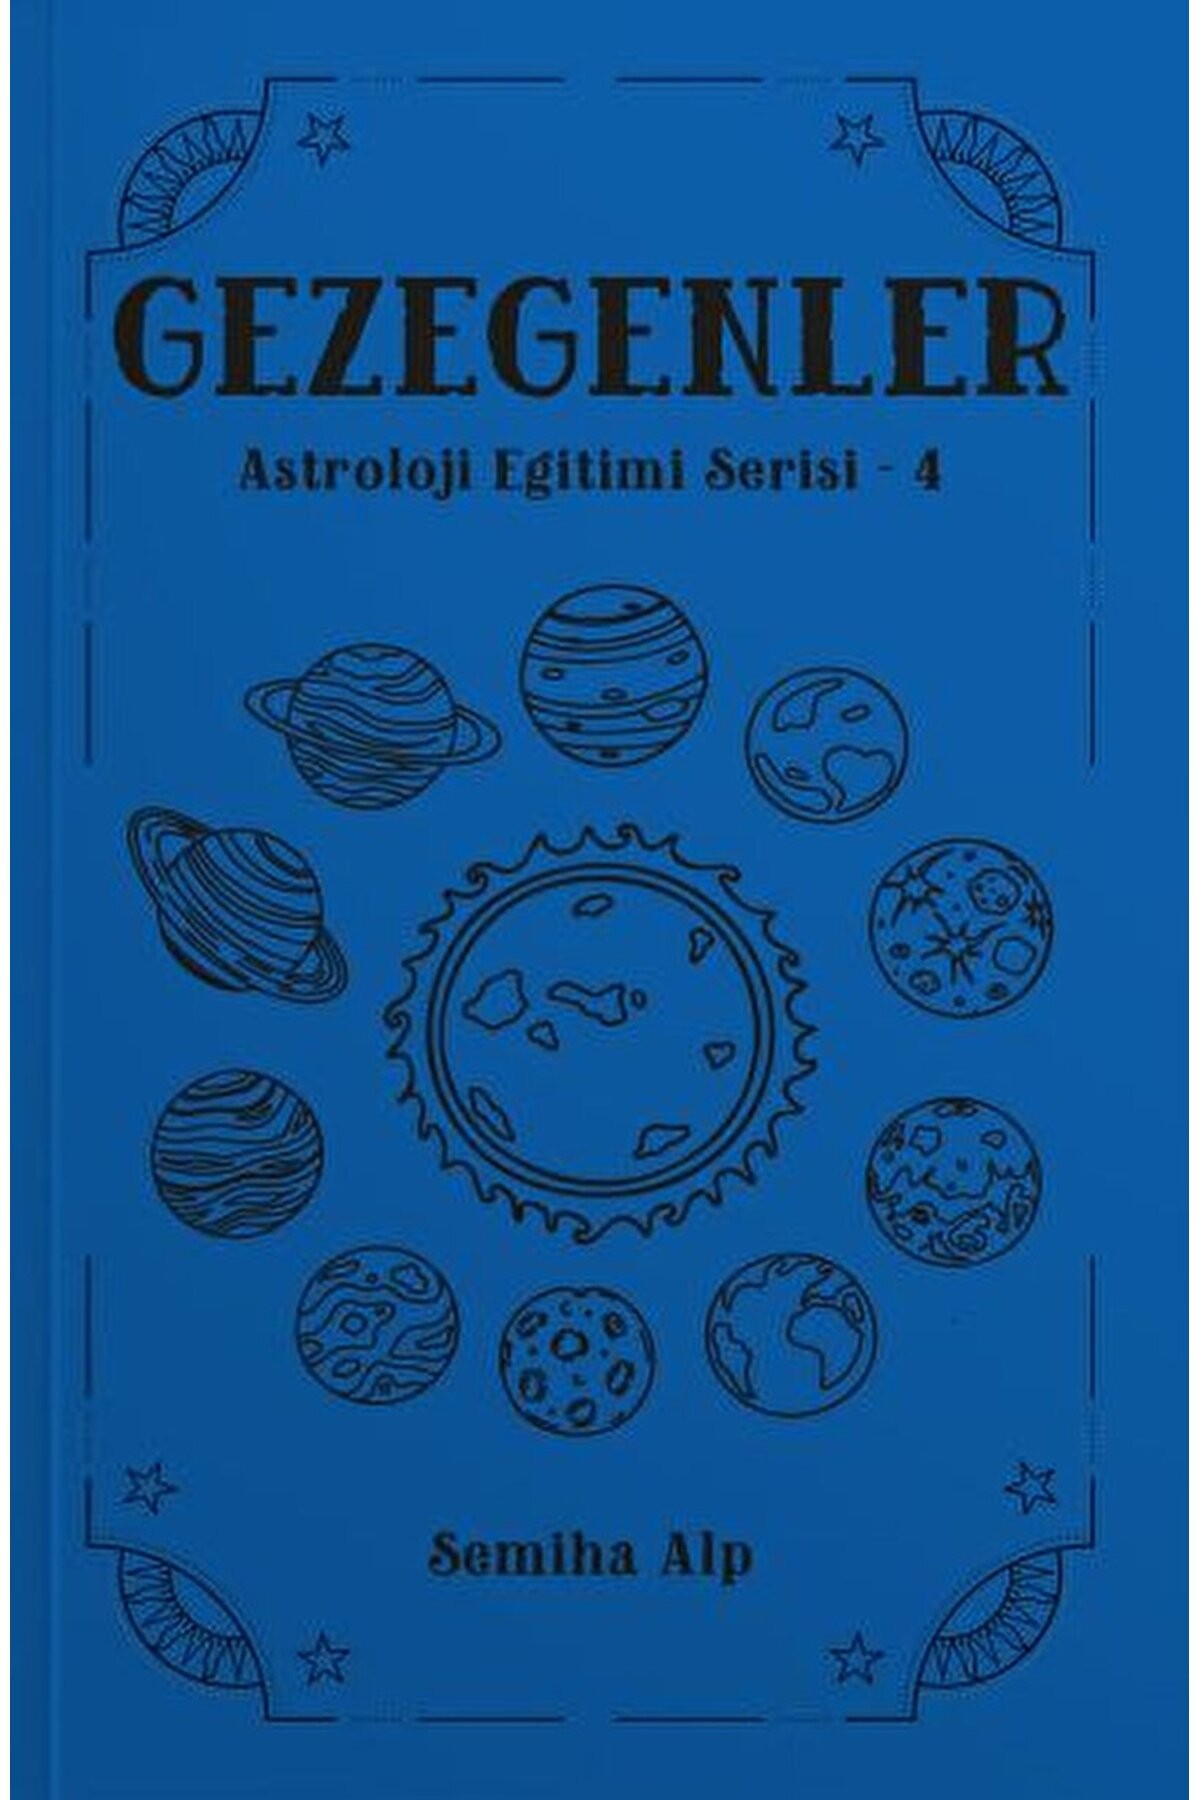 Gezegenler - Astroloji Eğitimi Serisi - 4 / Semiha Alp / Ekorp Kitap / 9786057203991